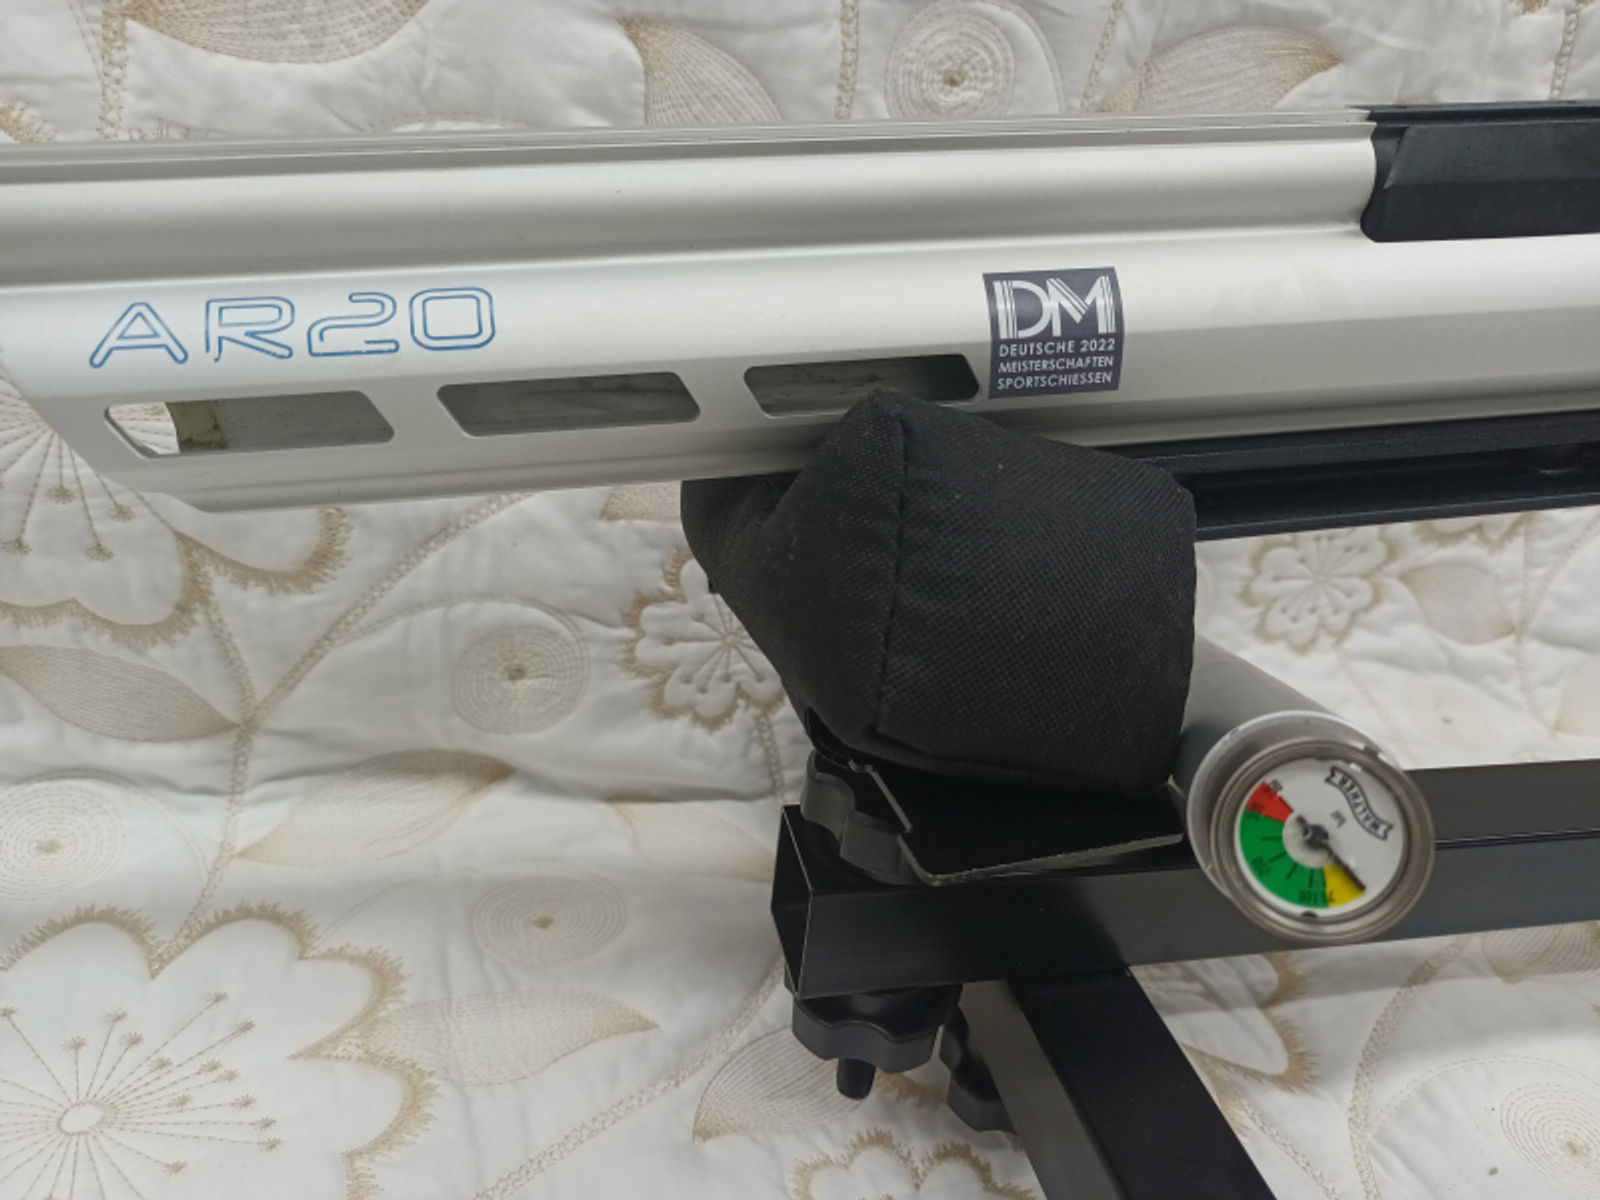 Hämmerli AR20 Pressluft Cal.4,5mm Matchgewehr Luftgewehr LG - TOP ZUSTAND